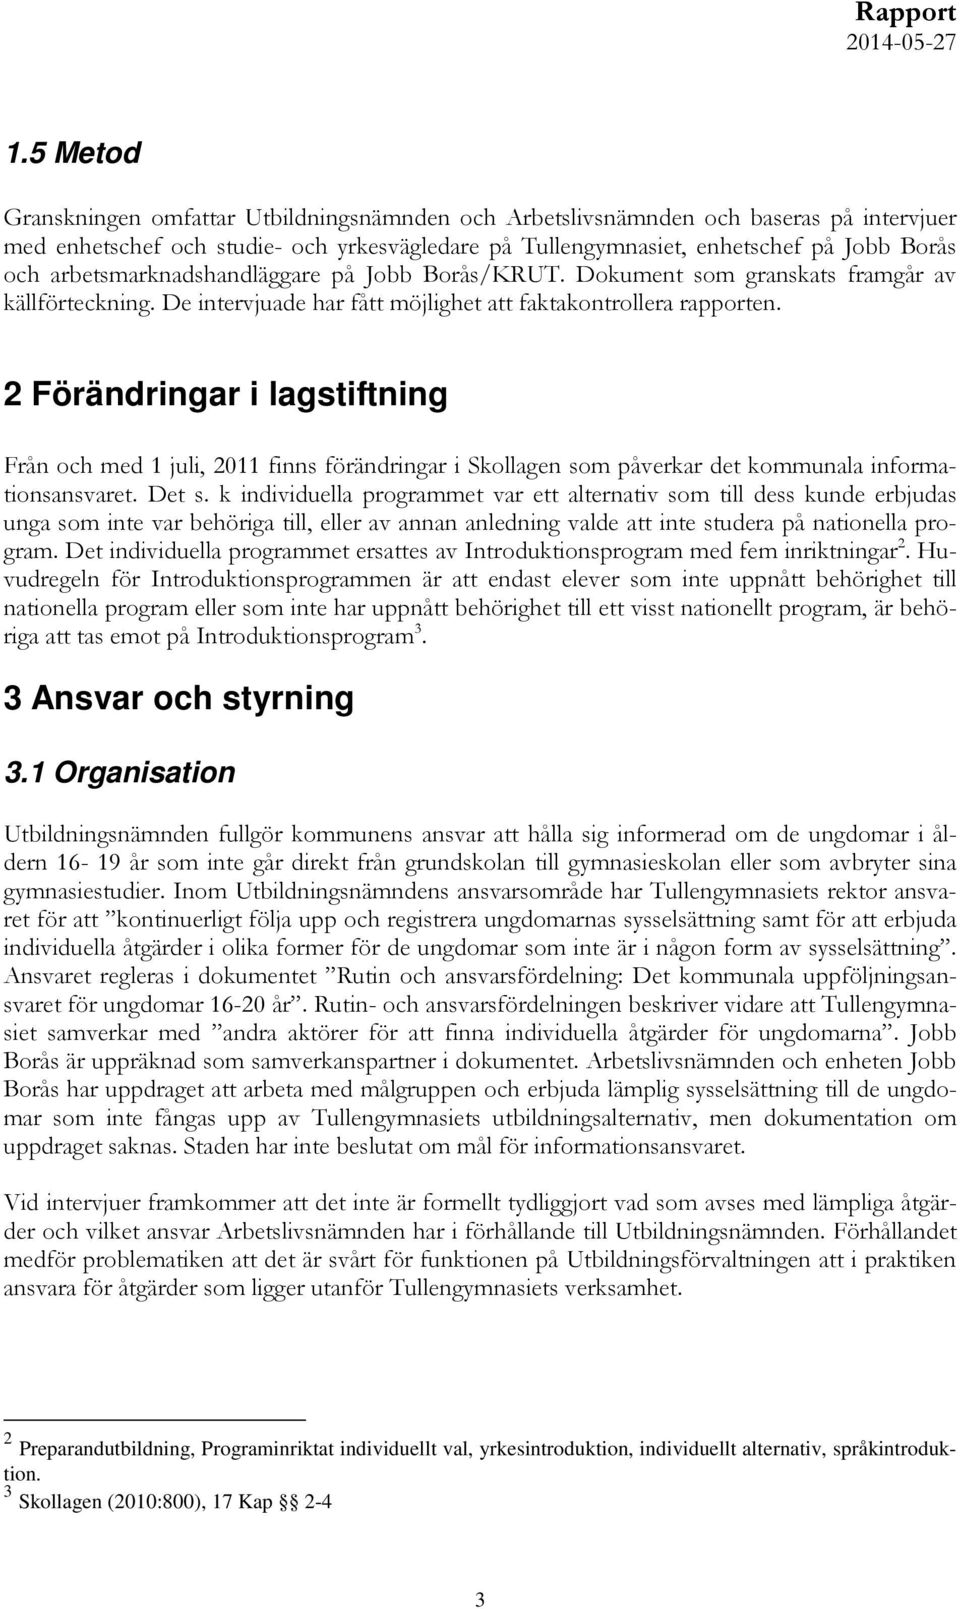 2 Förändringar i lagstiftning Från och med 1 juli, 2011 finns förändringar i Skollagen som påverkar det kommunala informationsansvaret. Det s.